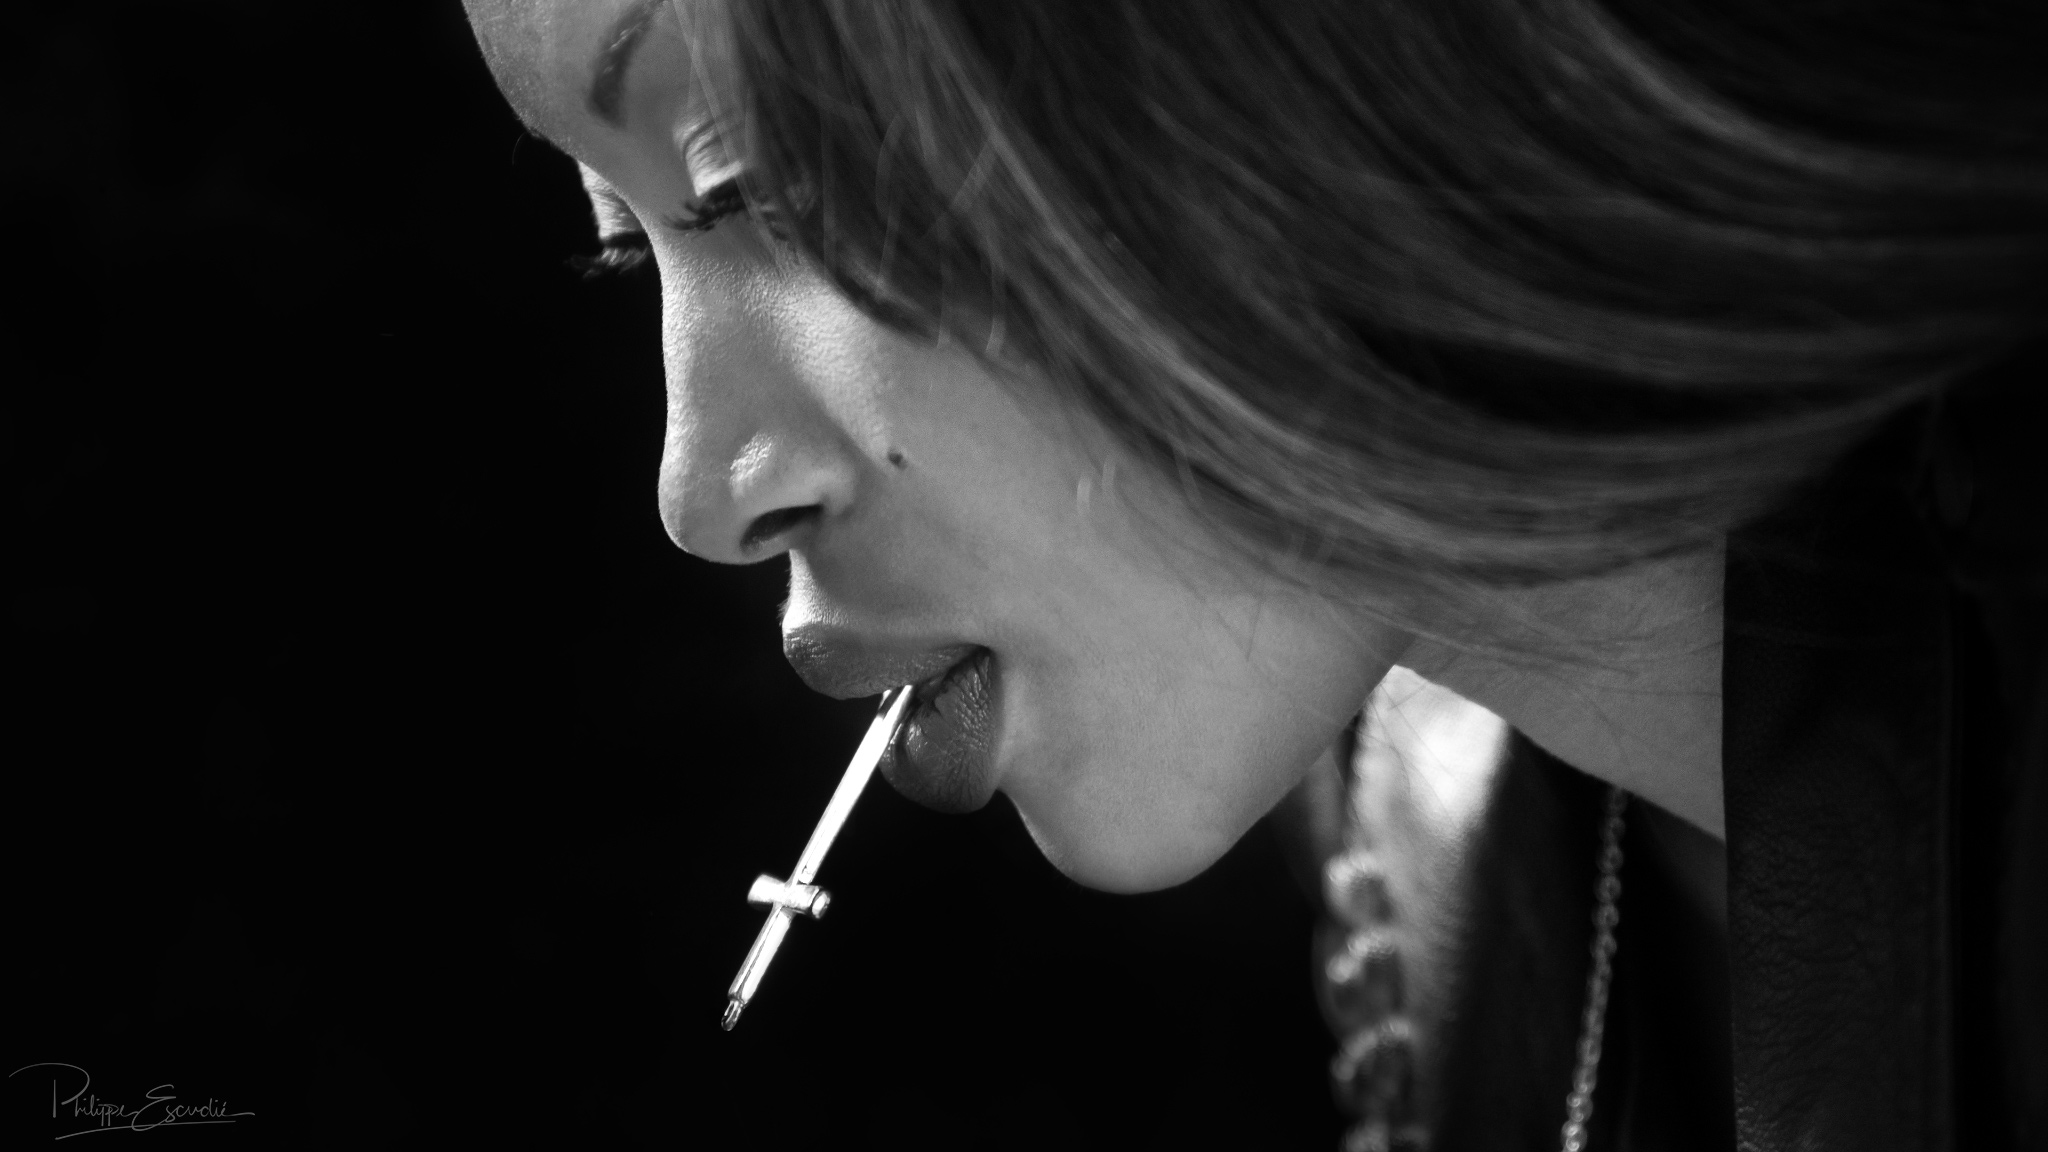 Gros plan du visage du modèle photo Nina, en noir et blanc, tenant une croix d'argent dans sa bouche